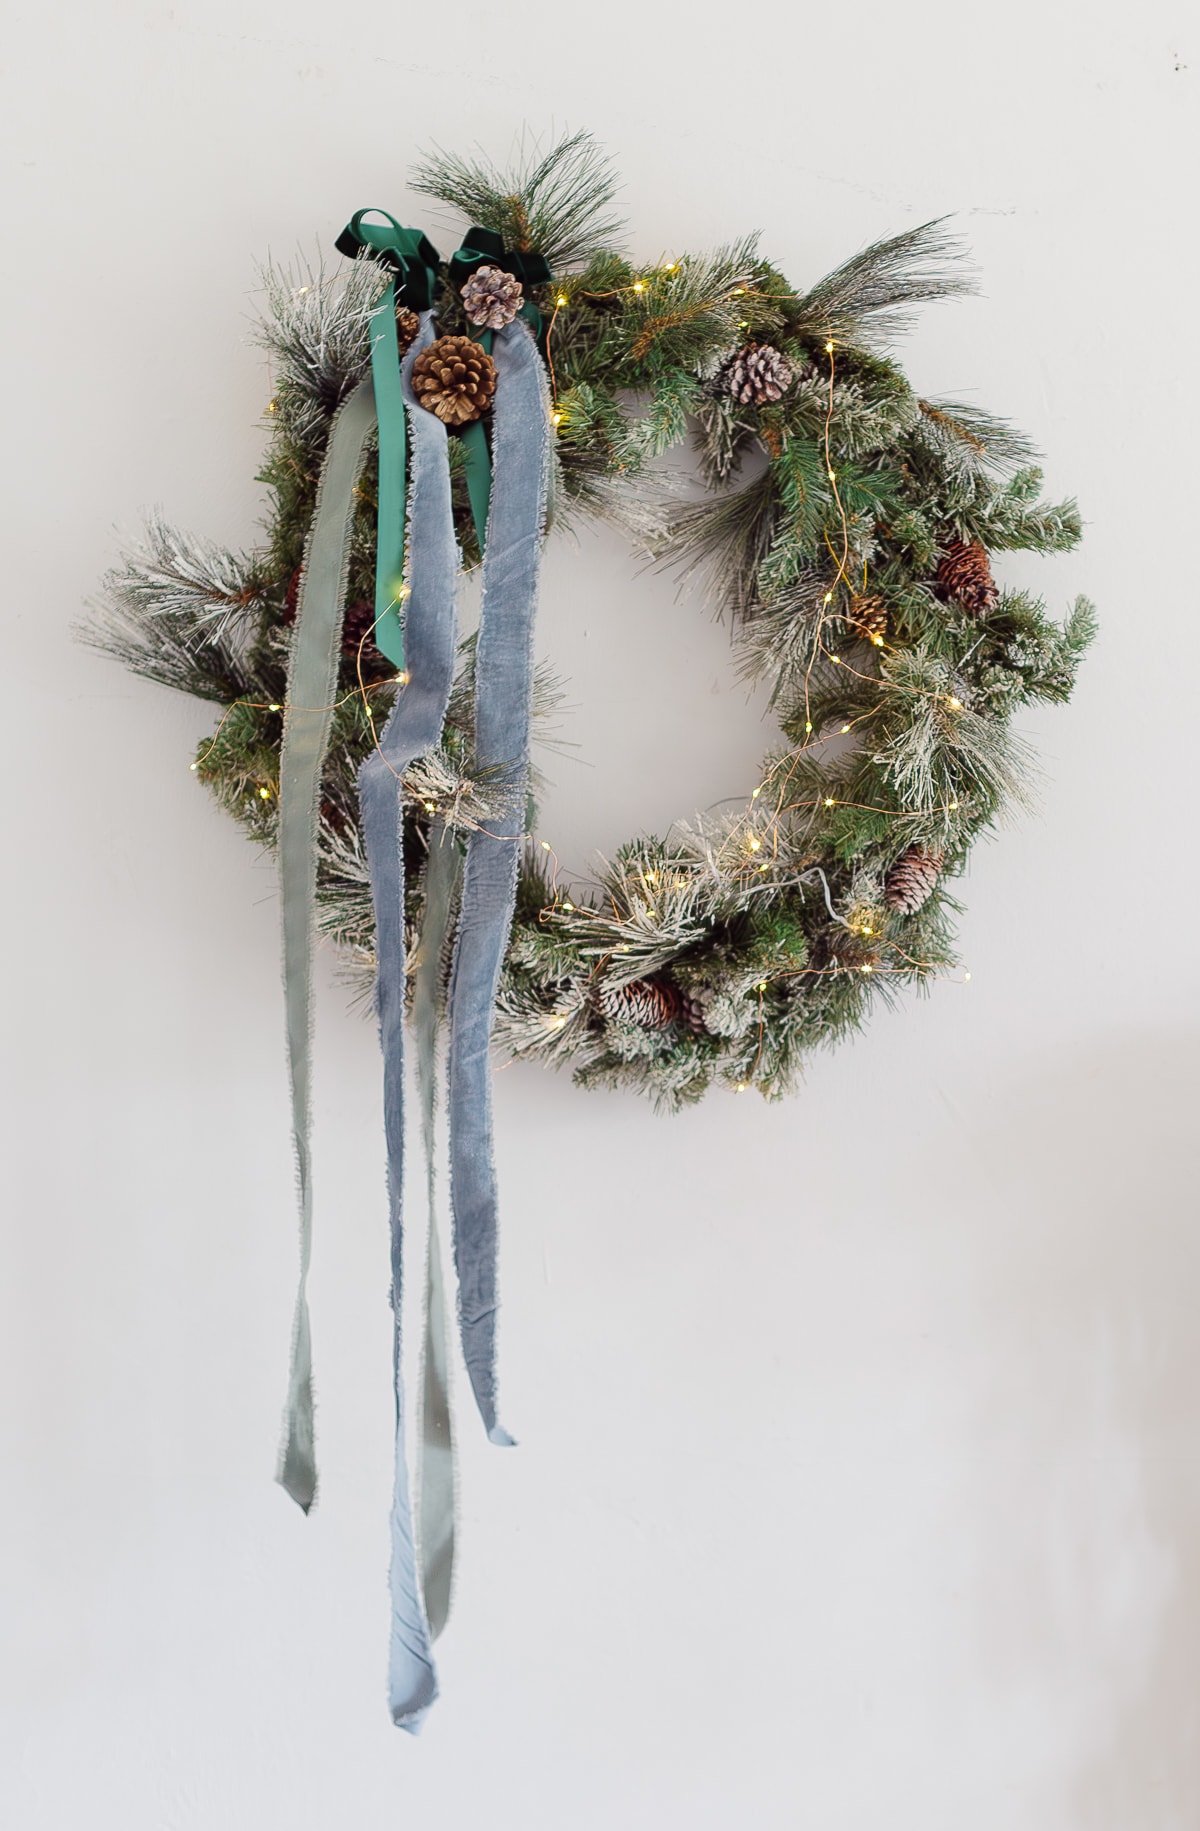 embellished Christmas wreath